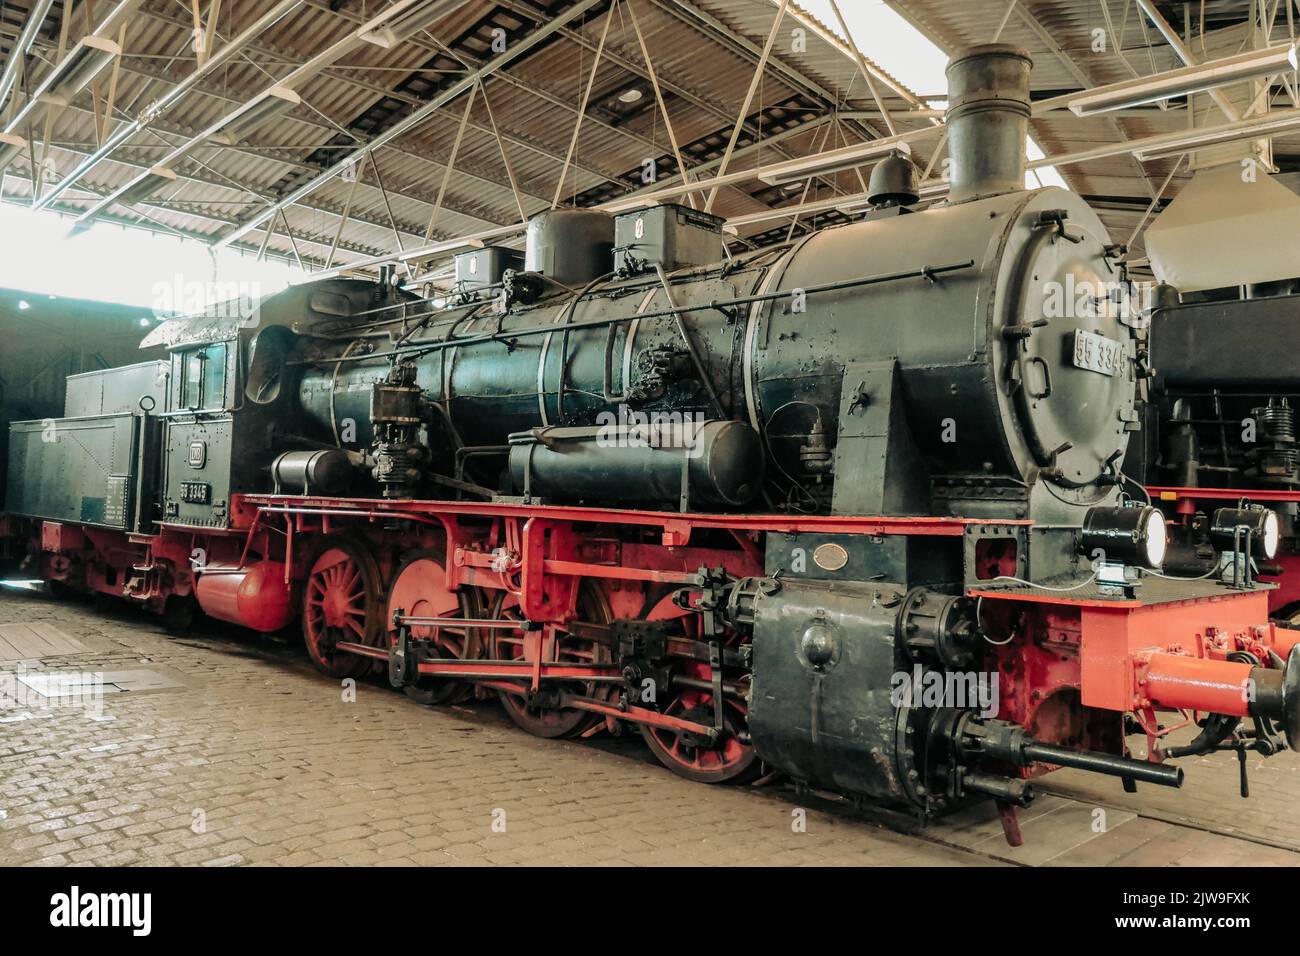 Locomotoras históricas en el Museo Ferroviario de bochum historia ferroviaria alemana Foto de stock